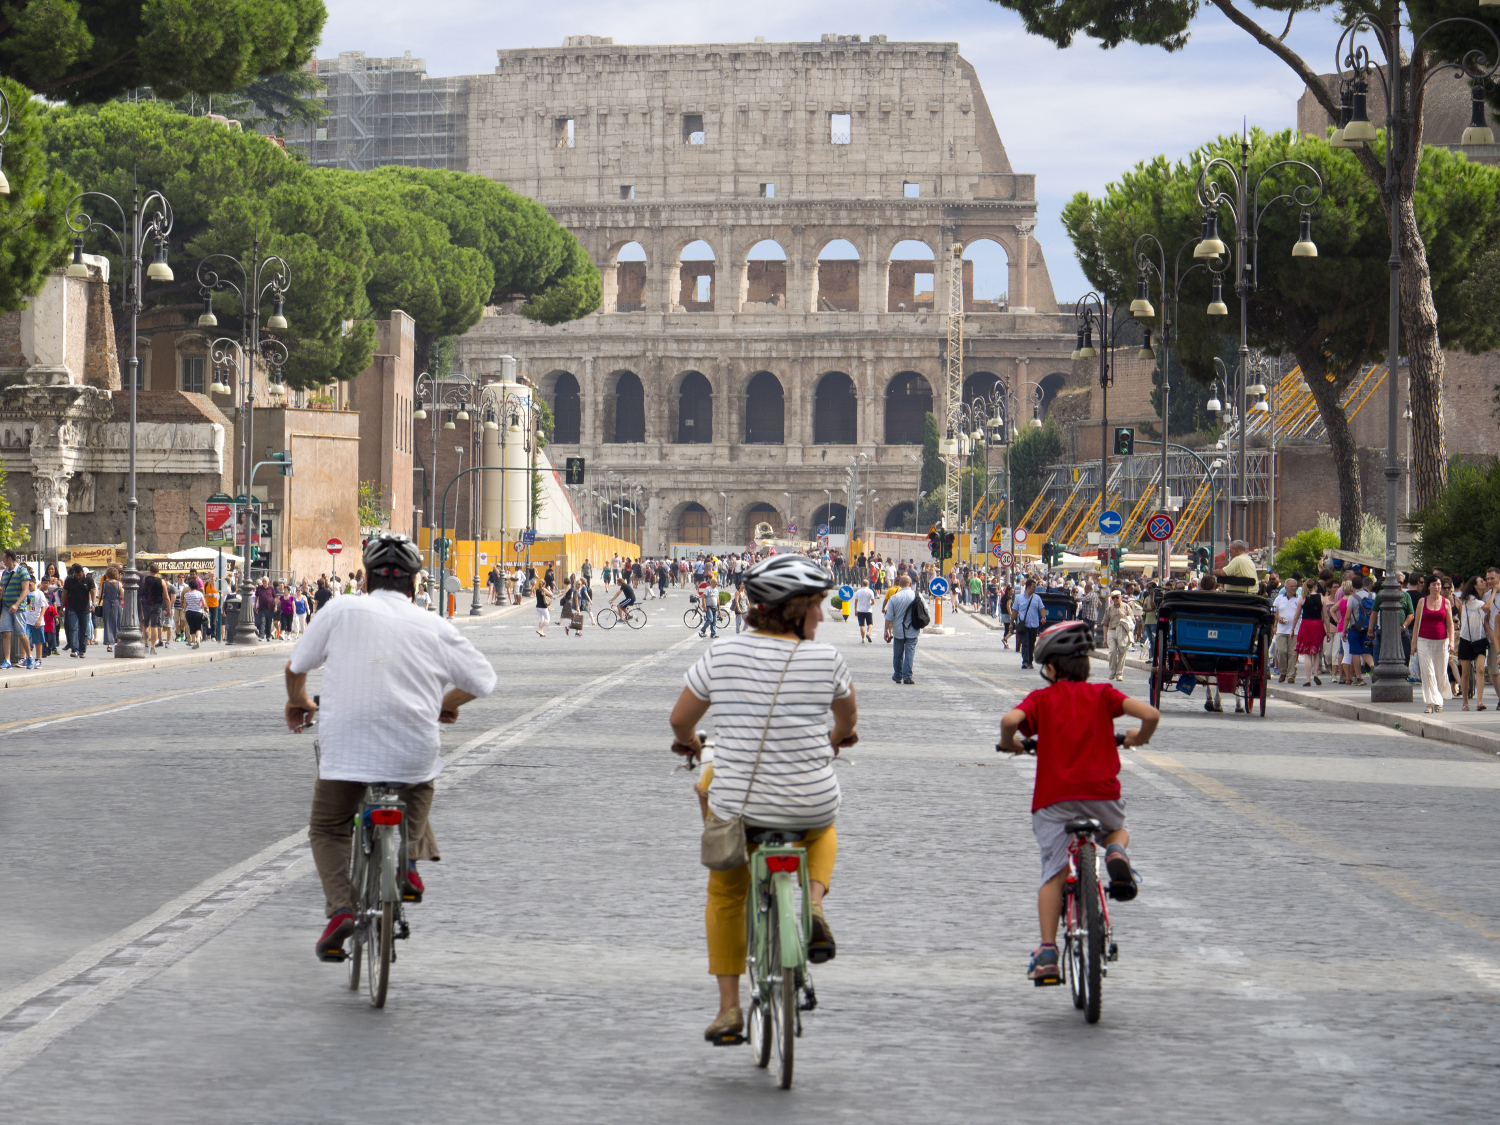 Cycling down Via del Fori Imperiali towards the Colosseum.